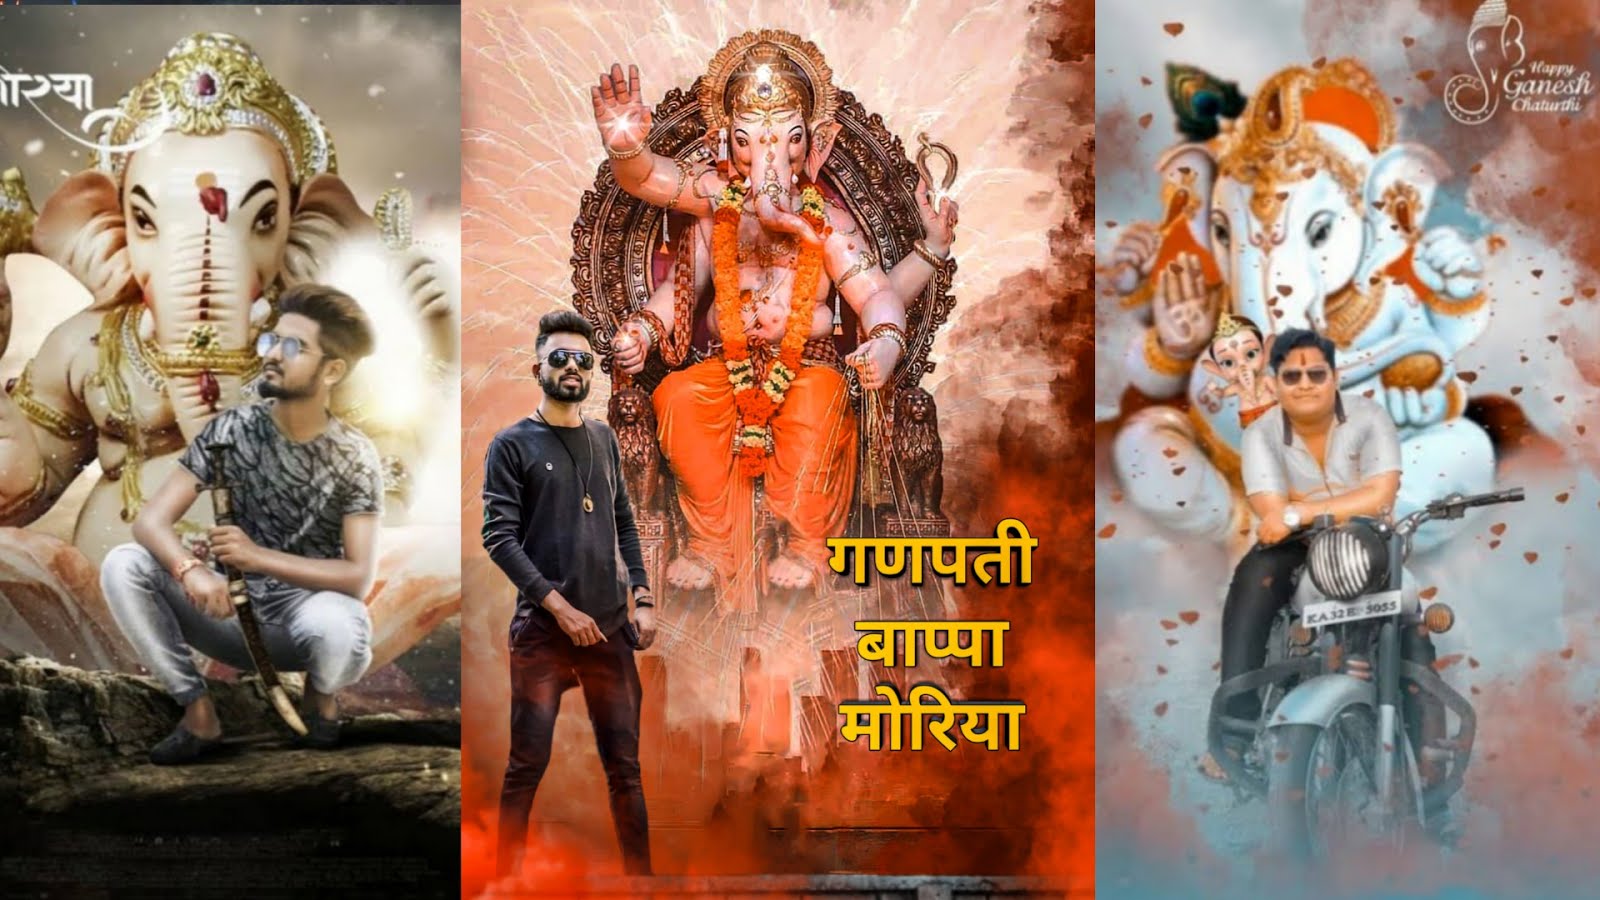 Ganesh chaturthi photo editing picsart hindi tutorial 2019| ganesha photo  editing 2019 - LEARNINGWITHSR